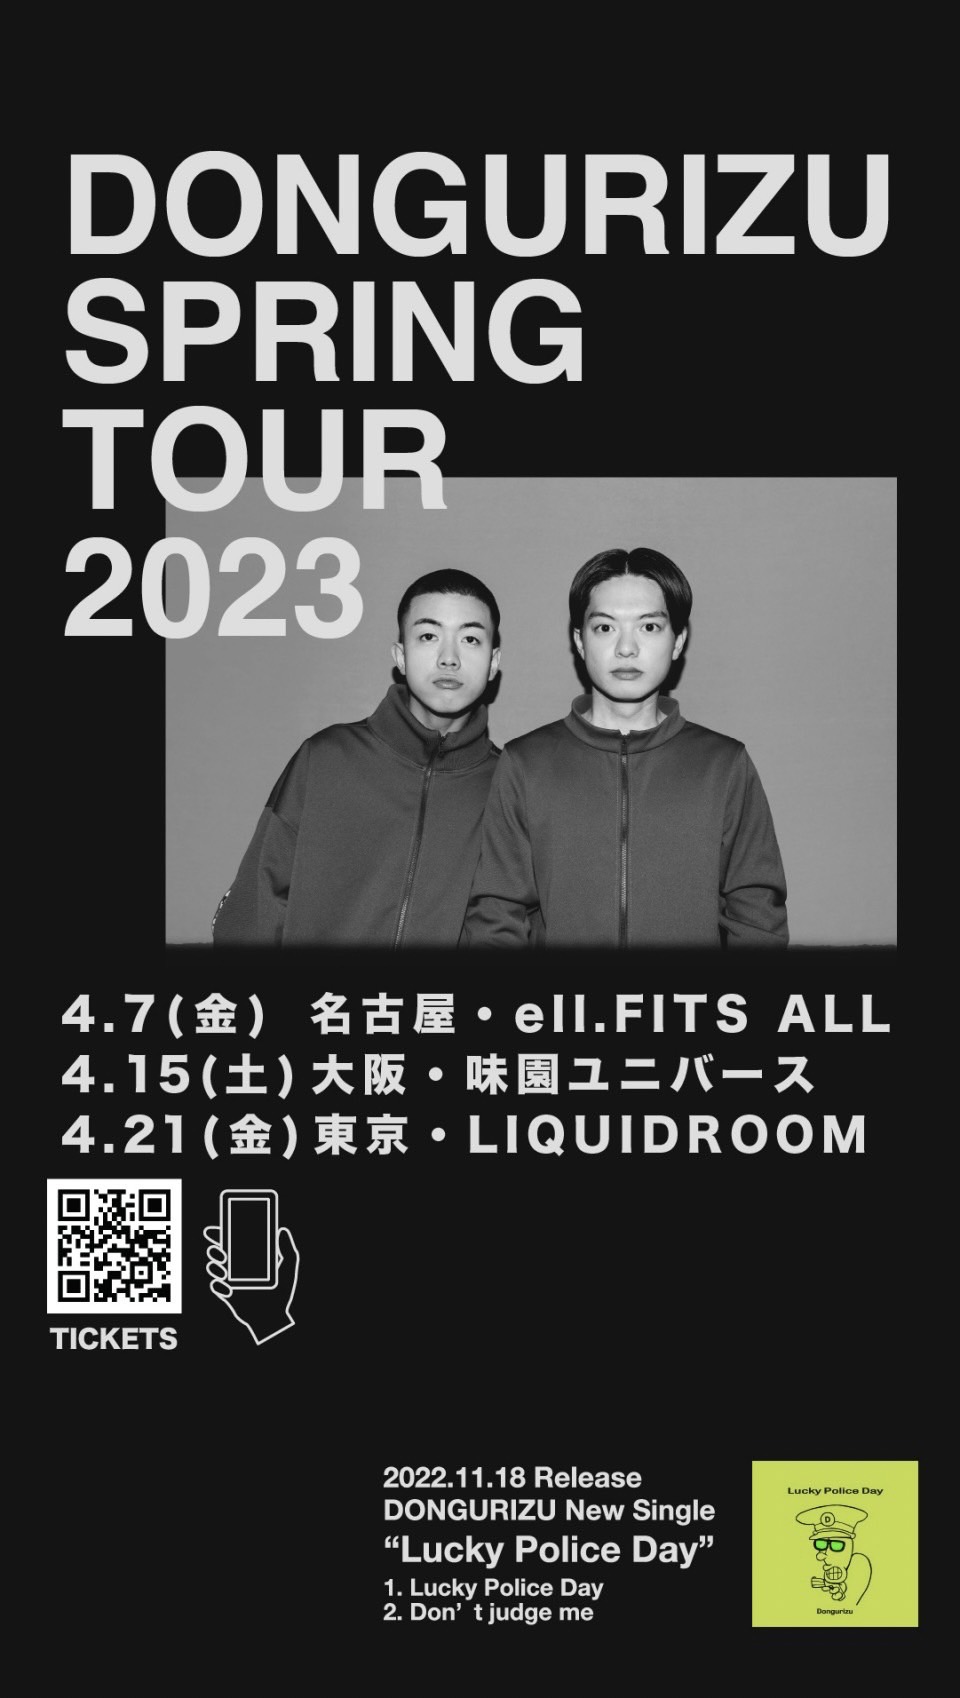 DONGURIZU SPRING TOUR 2023